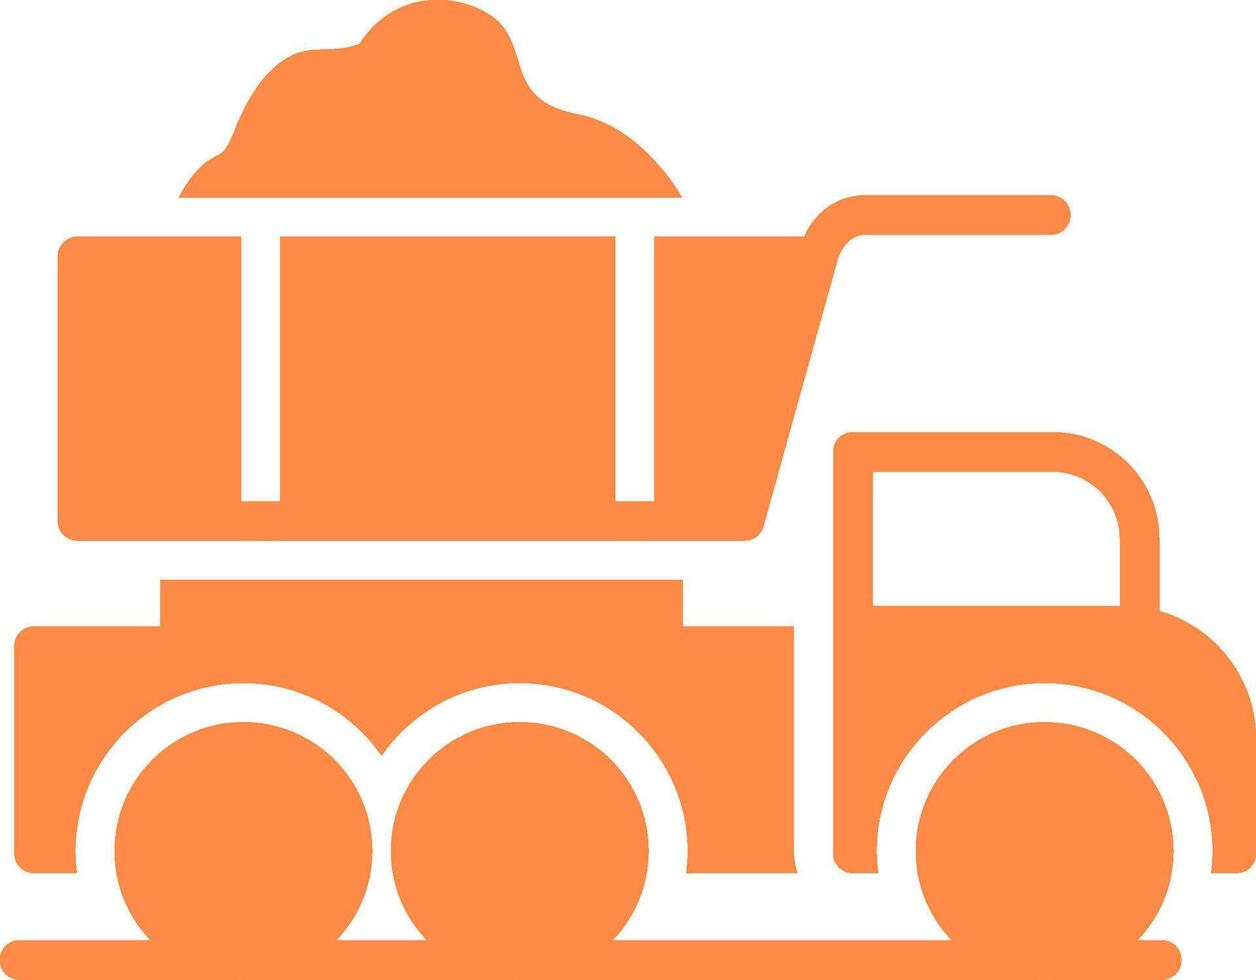 dump vrachtauto creatief icoon ontwerp vector